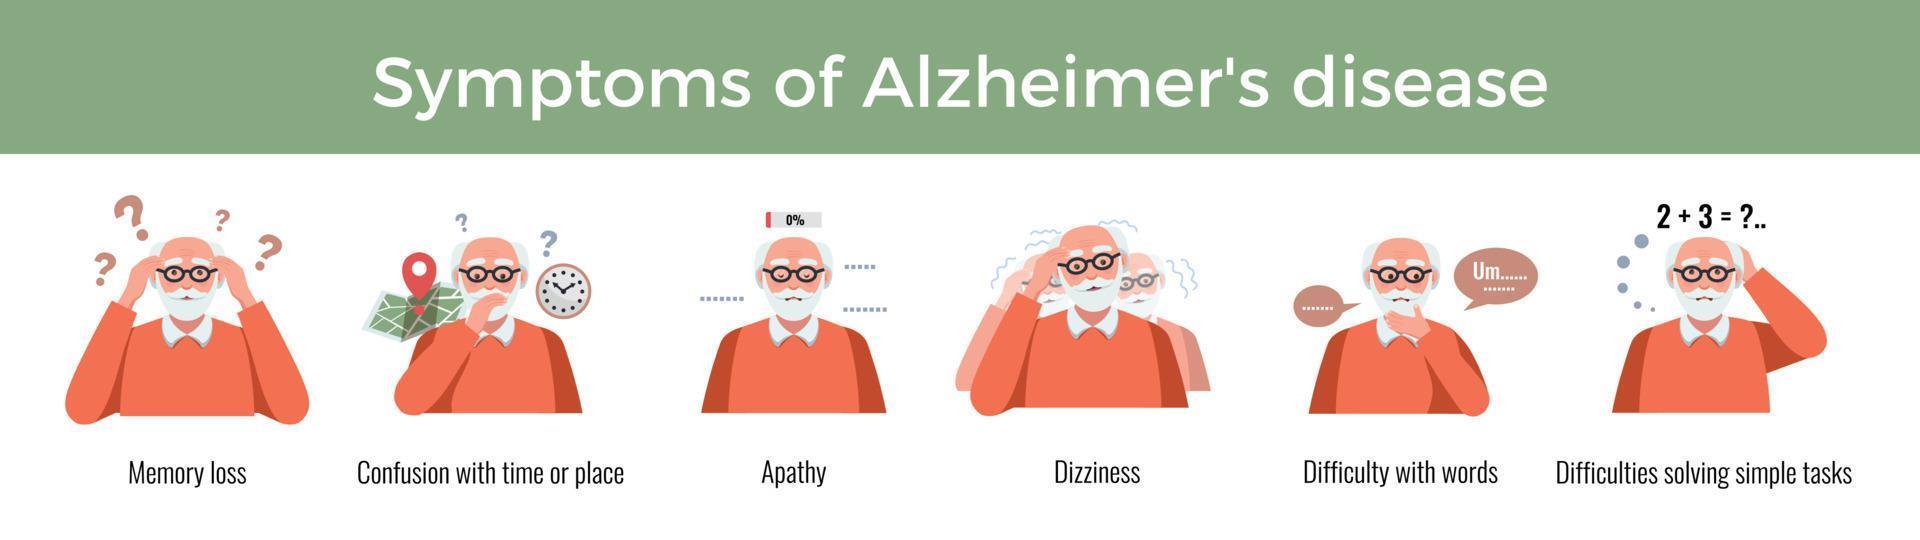 Alzheimers sjukdom symtom sammansättning vektor